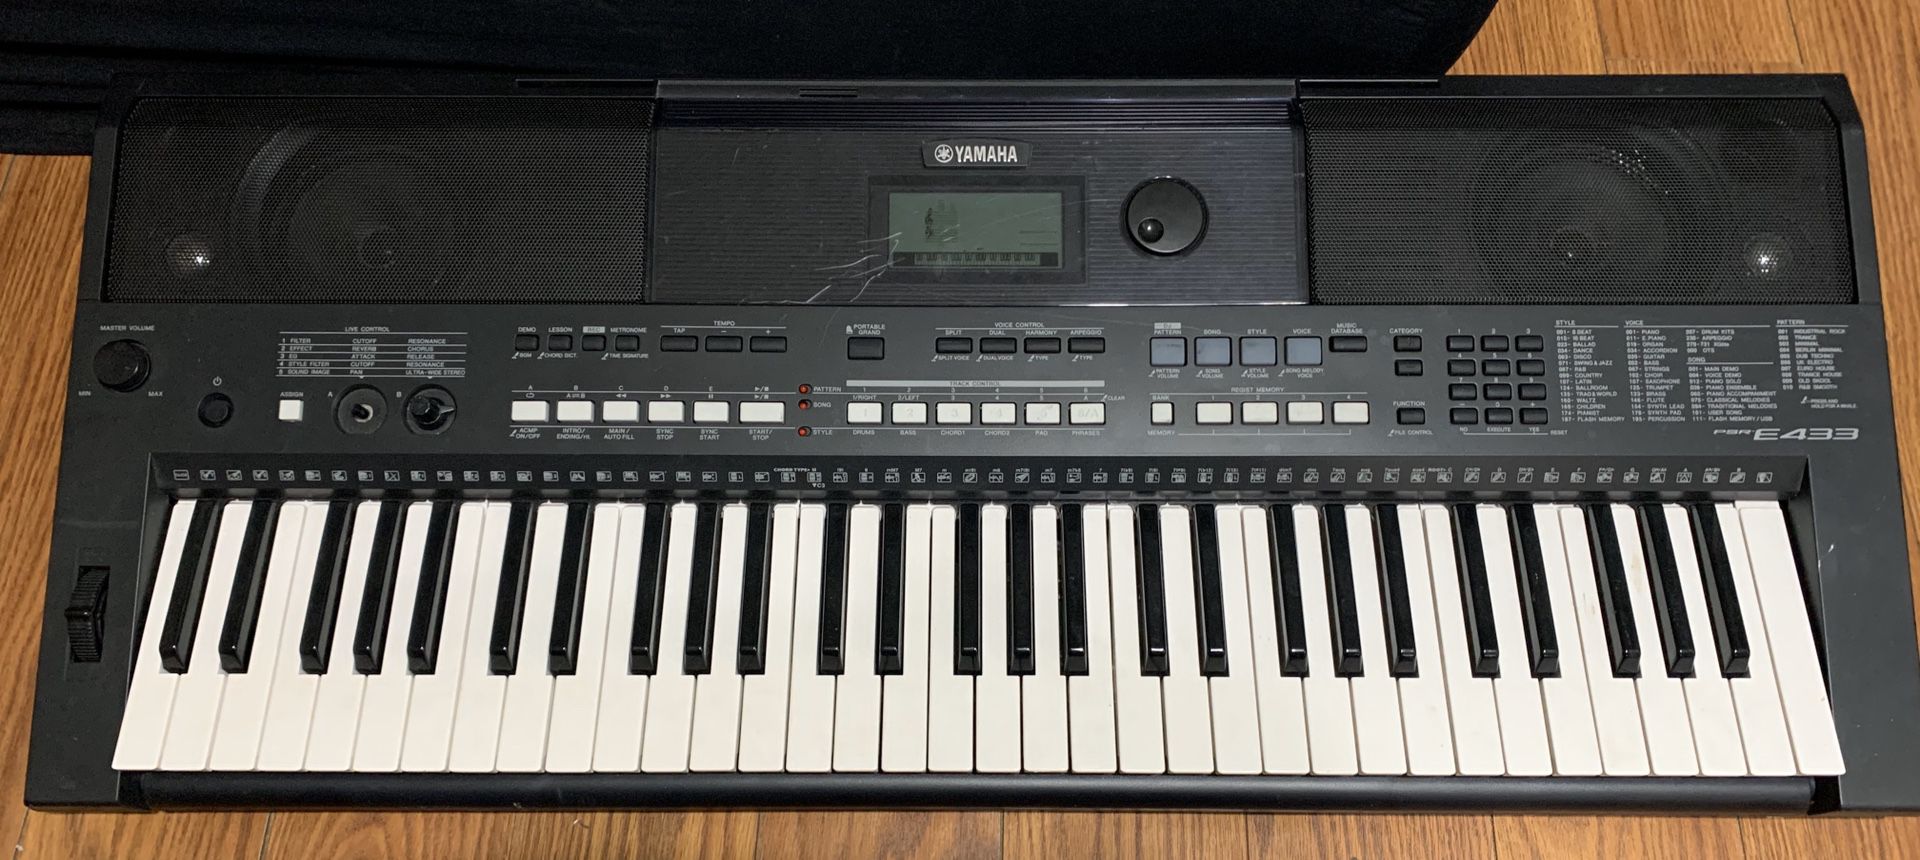 Yamaha keyboard 59 keys used